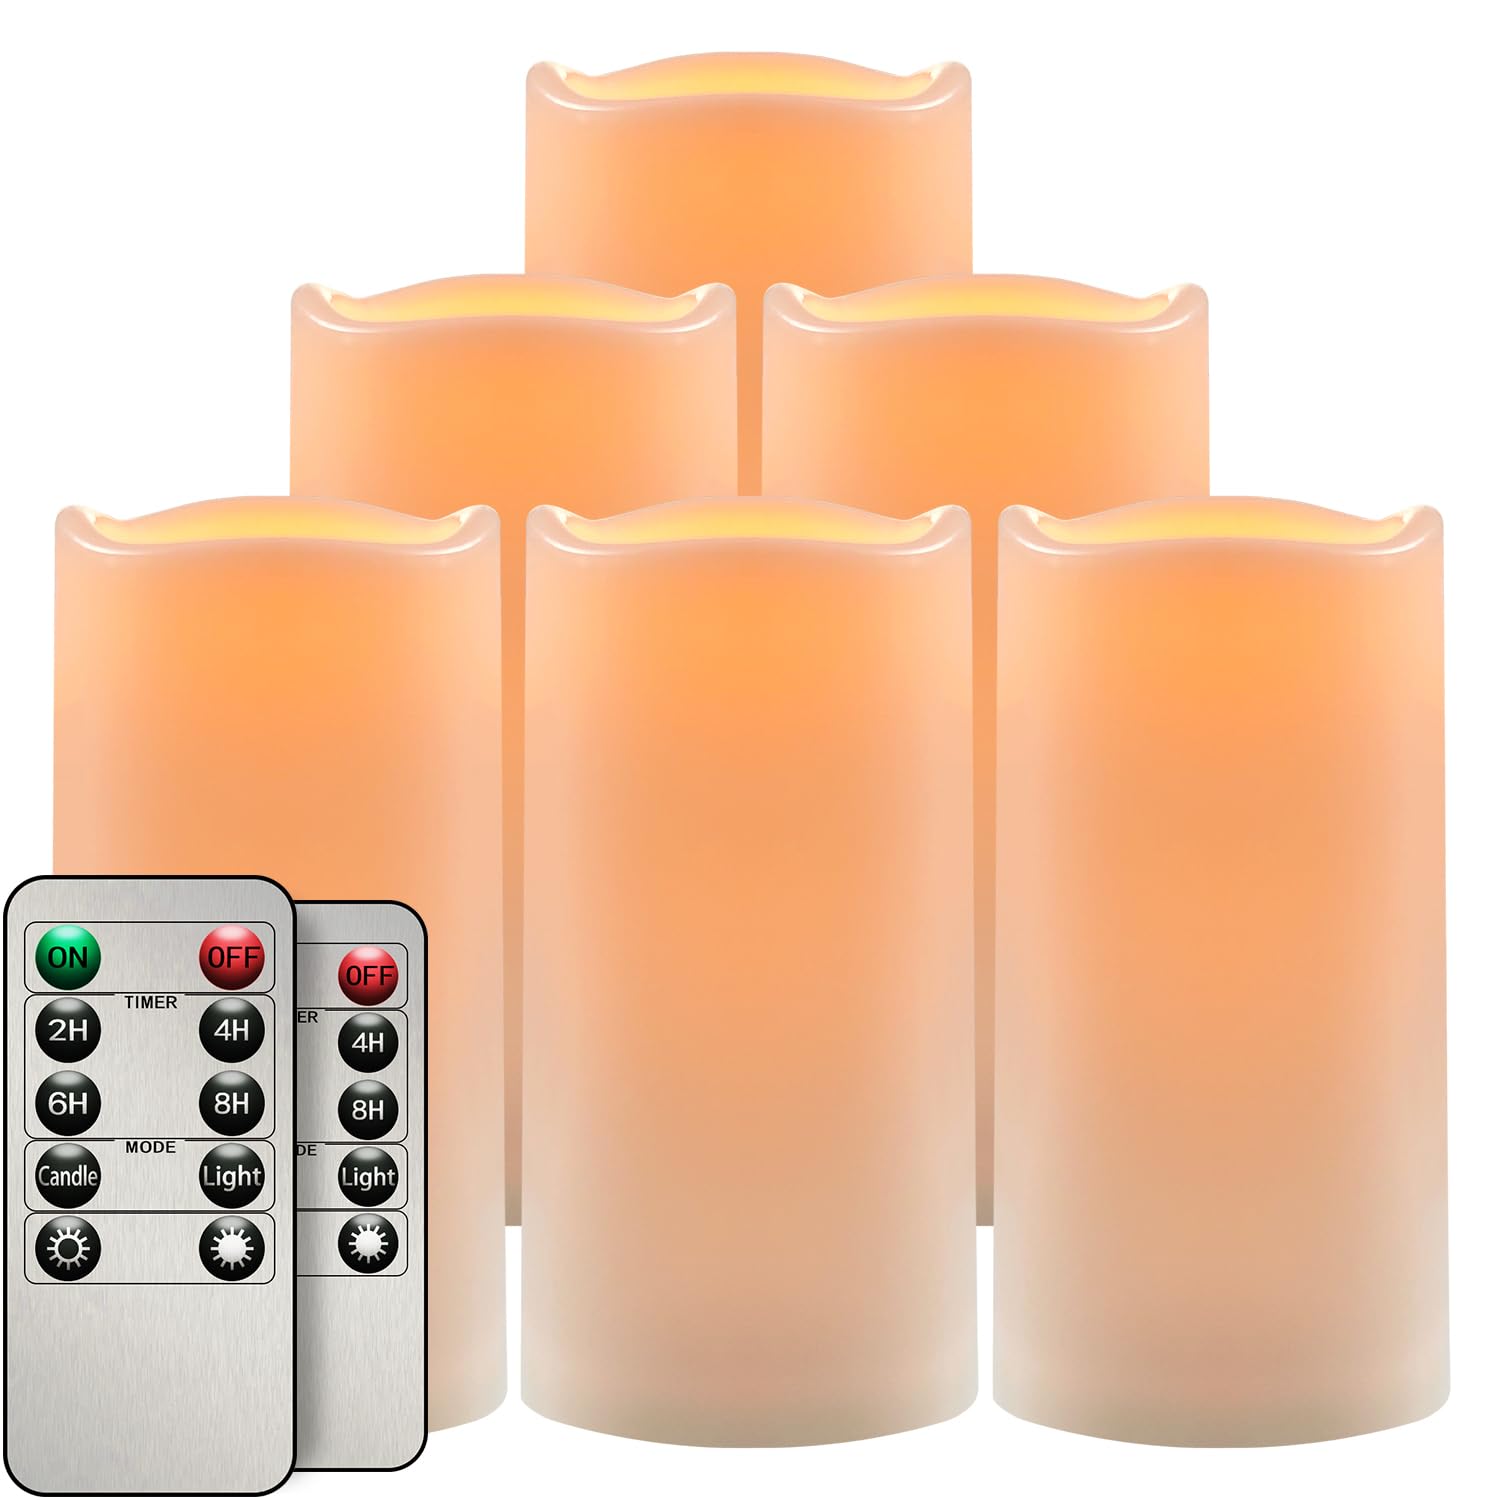 salipt LED Kerzen mit Timer, LED Kerze Batteriebetrieben Flackernde Flamme, Durchmesser 7.6 cm Flammenlose Kerzen Outdoor Wasserdicht, 6er-Set Weiß, Höhe 10.2 12.7 15.3 17.8 cm